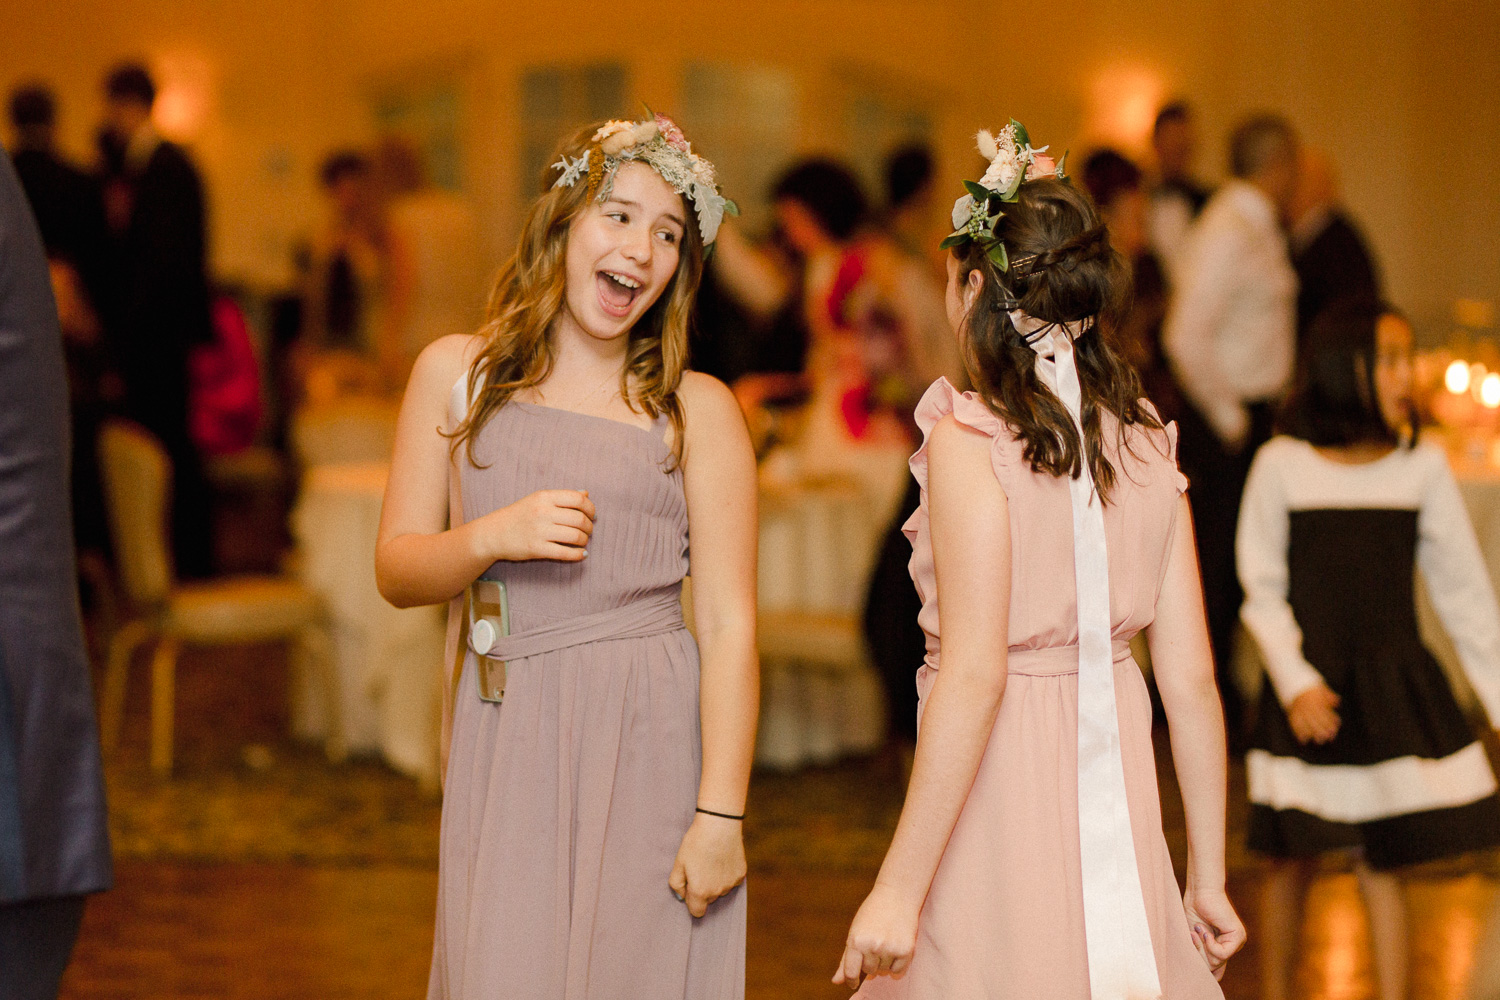 brides-sisters-dancing